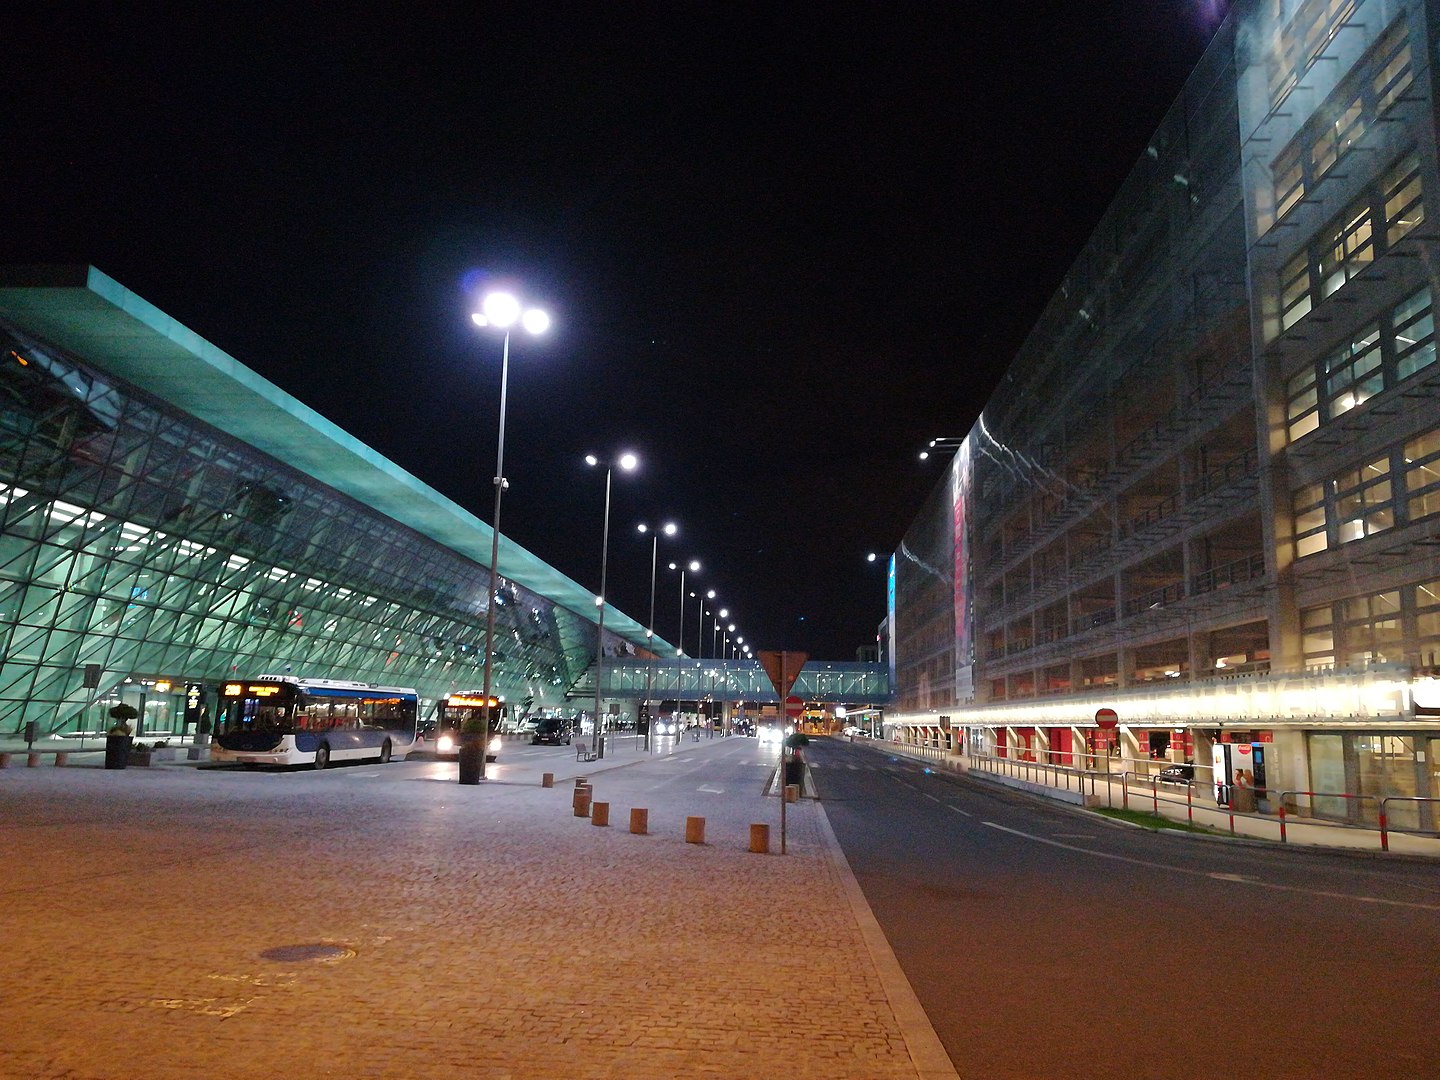 Port lotniczy im. Jana Pawła II nocą (2017), fot. Autorstwa Darpaw - Praca własna, CC BY-SA 4.0, https://commons.wikimedia.org/w/index.php?curid=64591524